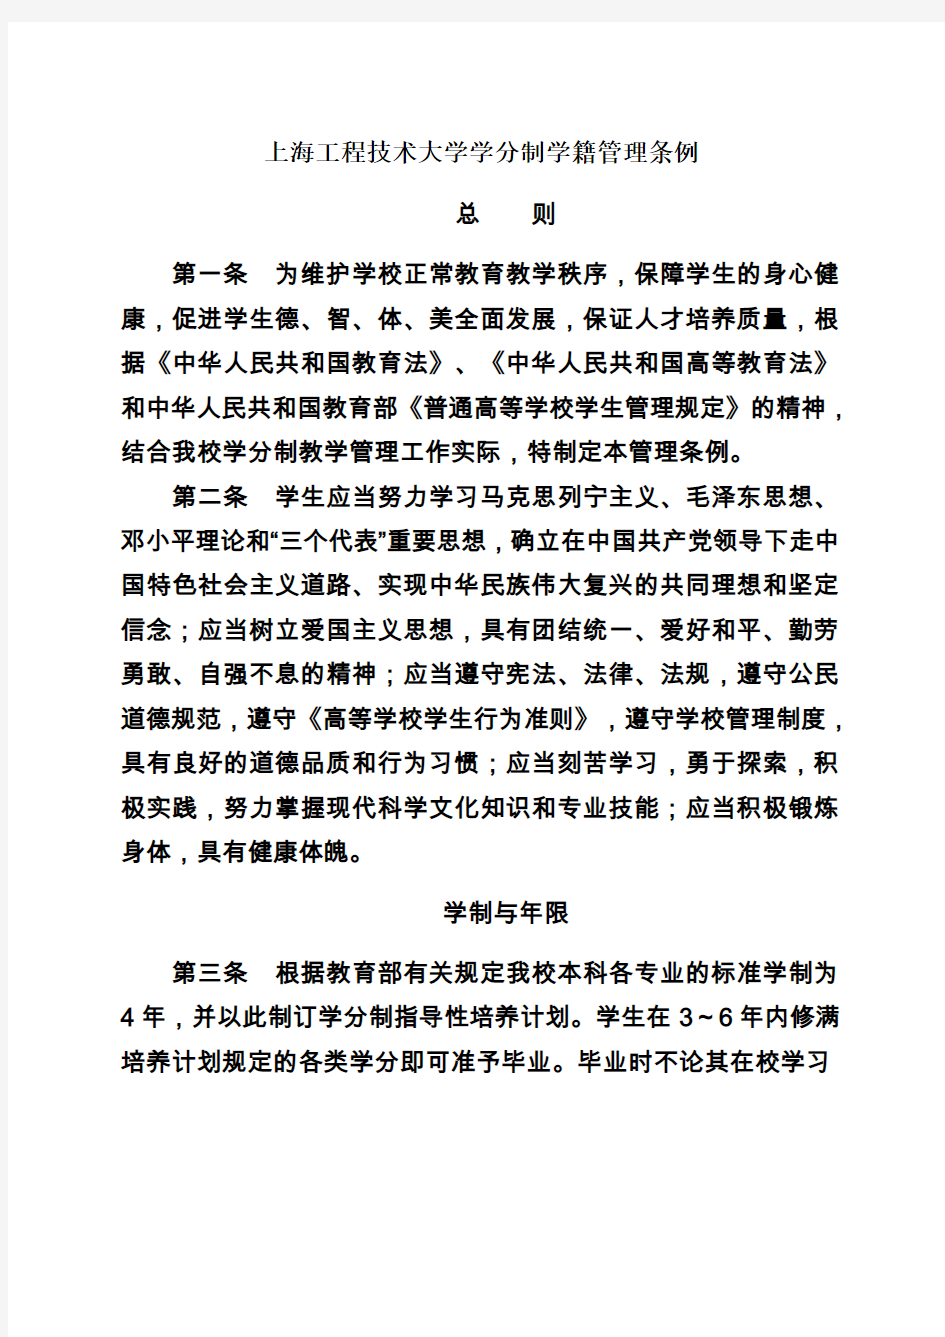 上海工程技术大学学分制学籍管理条例讲解